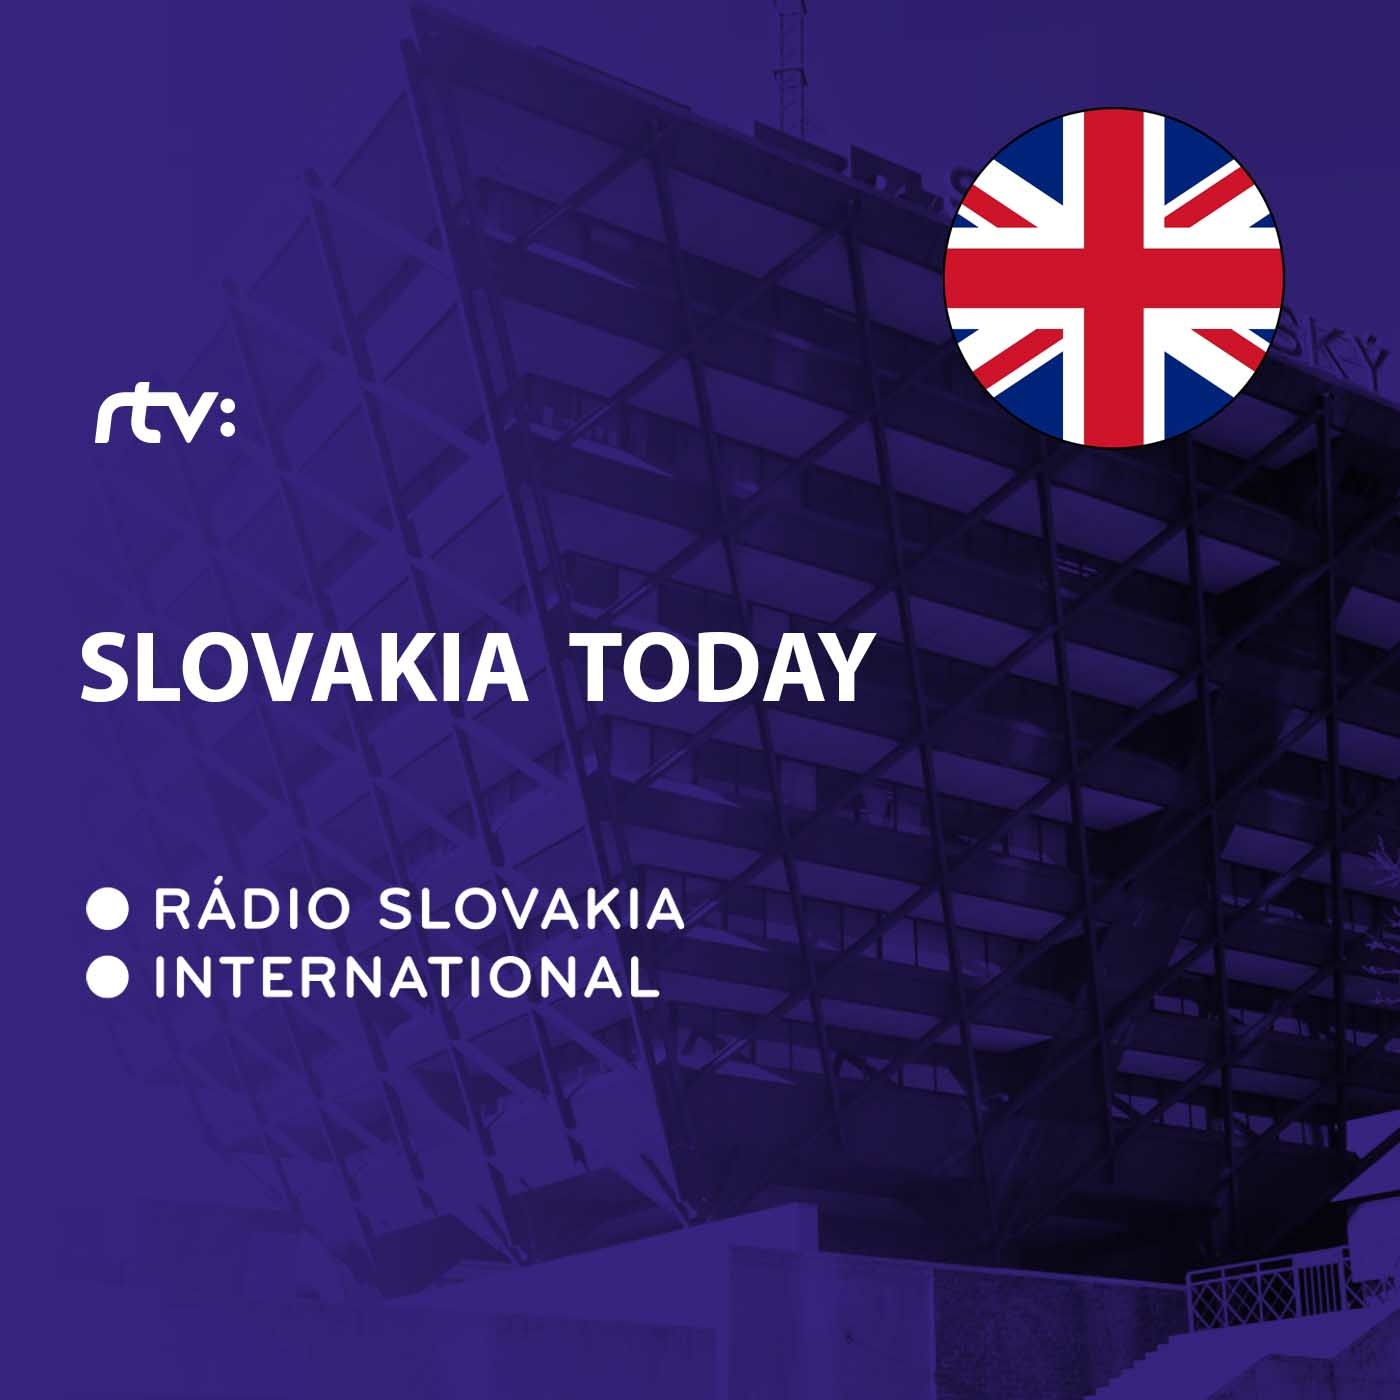 Slovakia Today